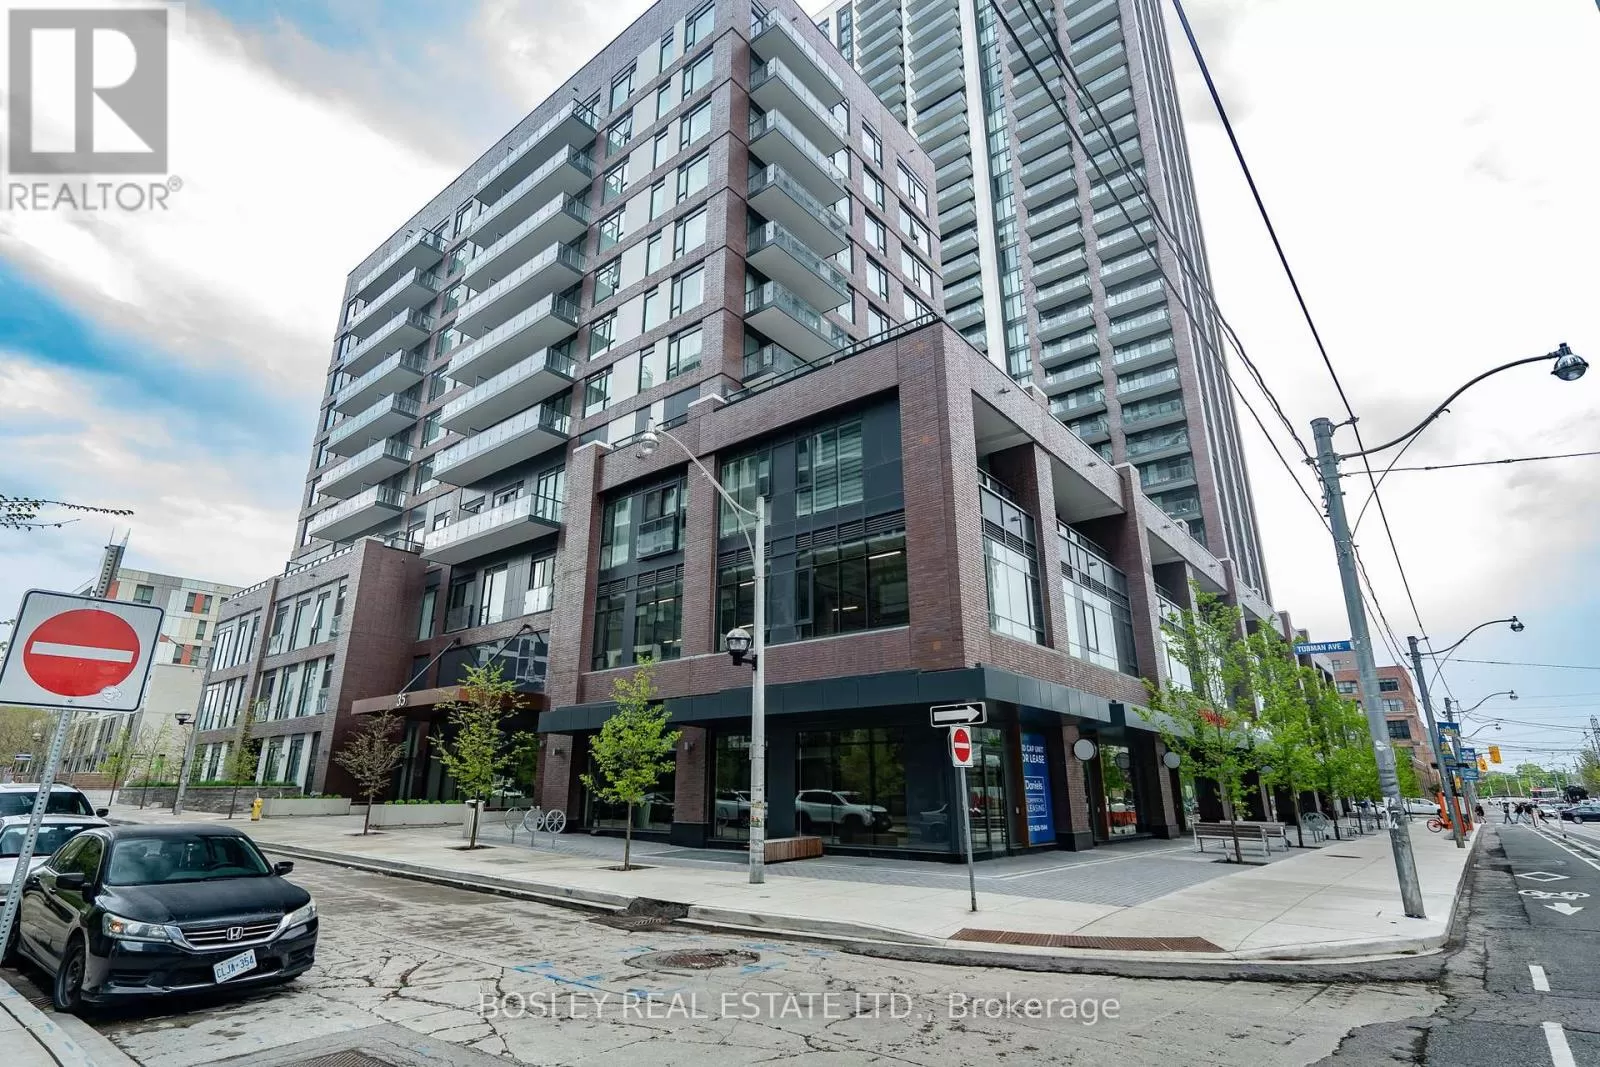 Apartment for rent: 312 - 35 Tubman Avenue, Toronto, Ontario M5A 0M8